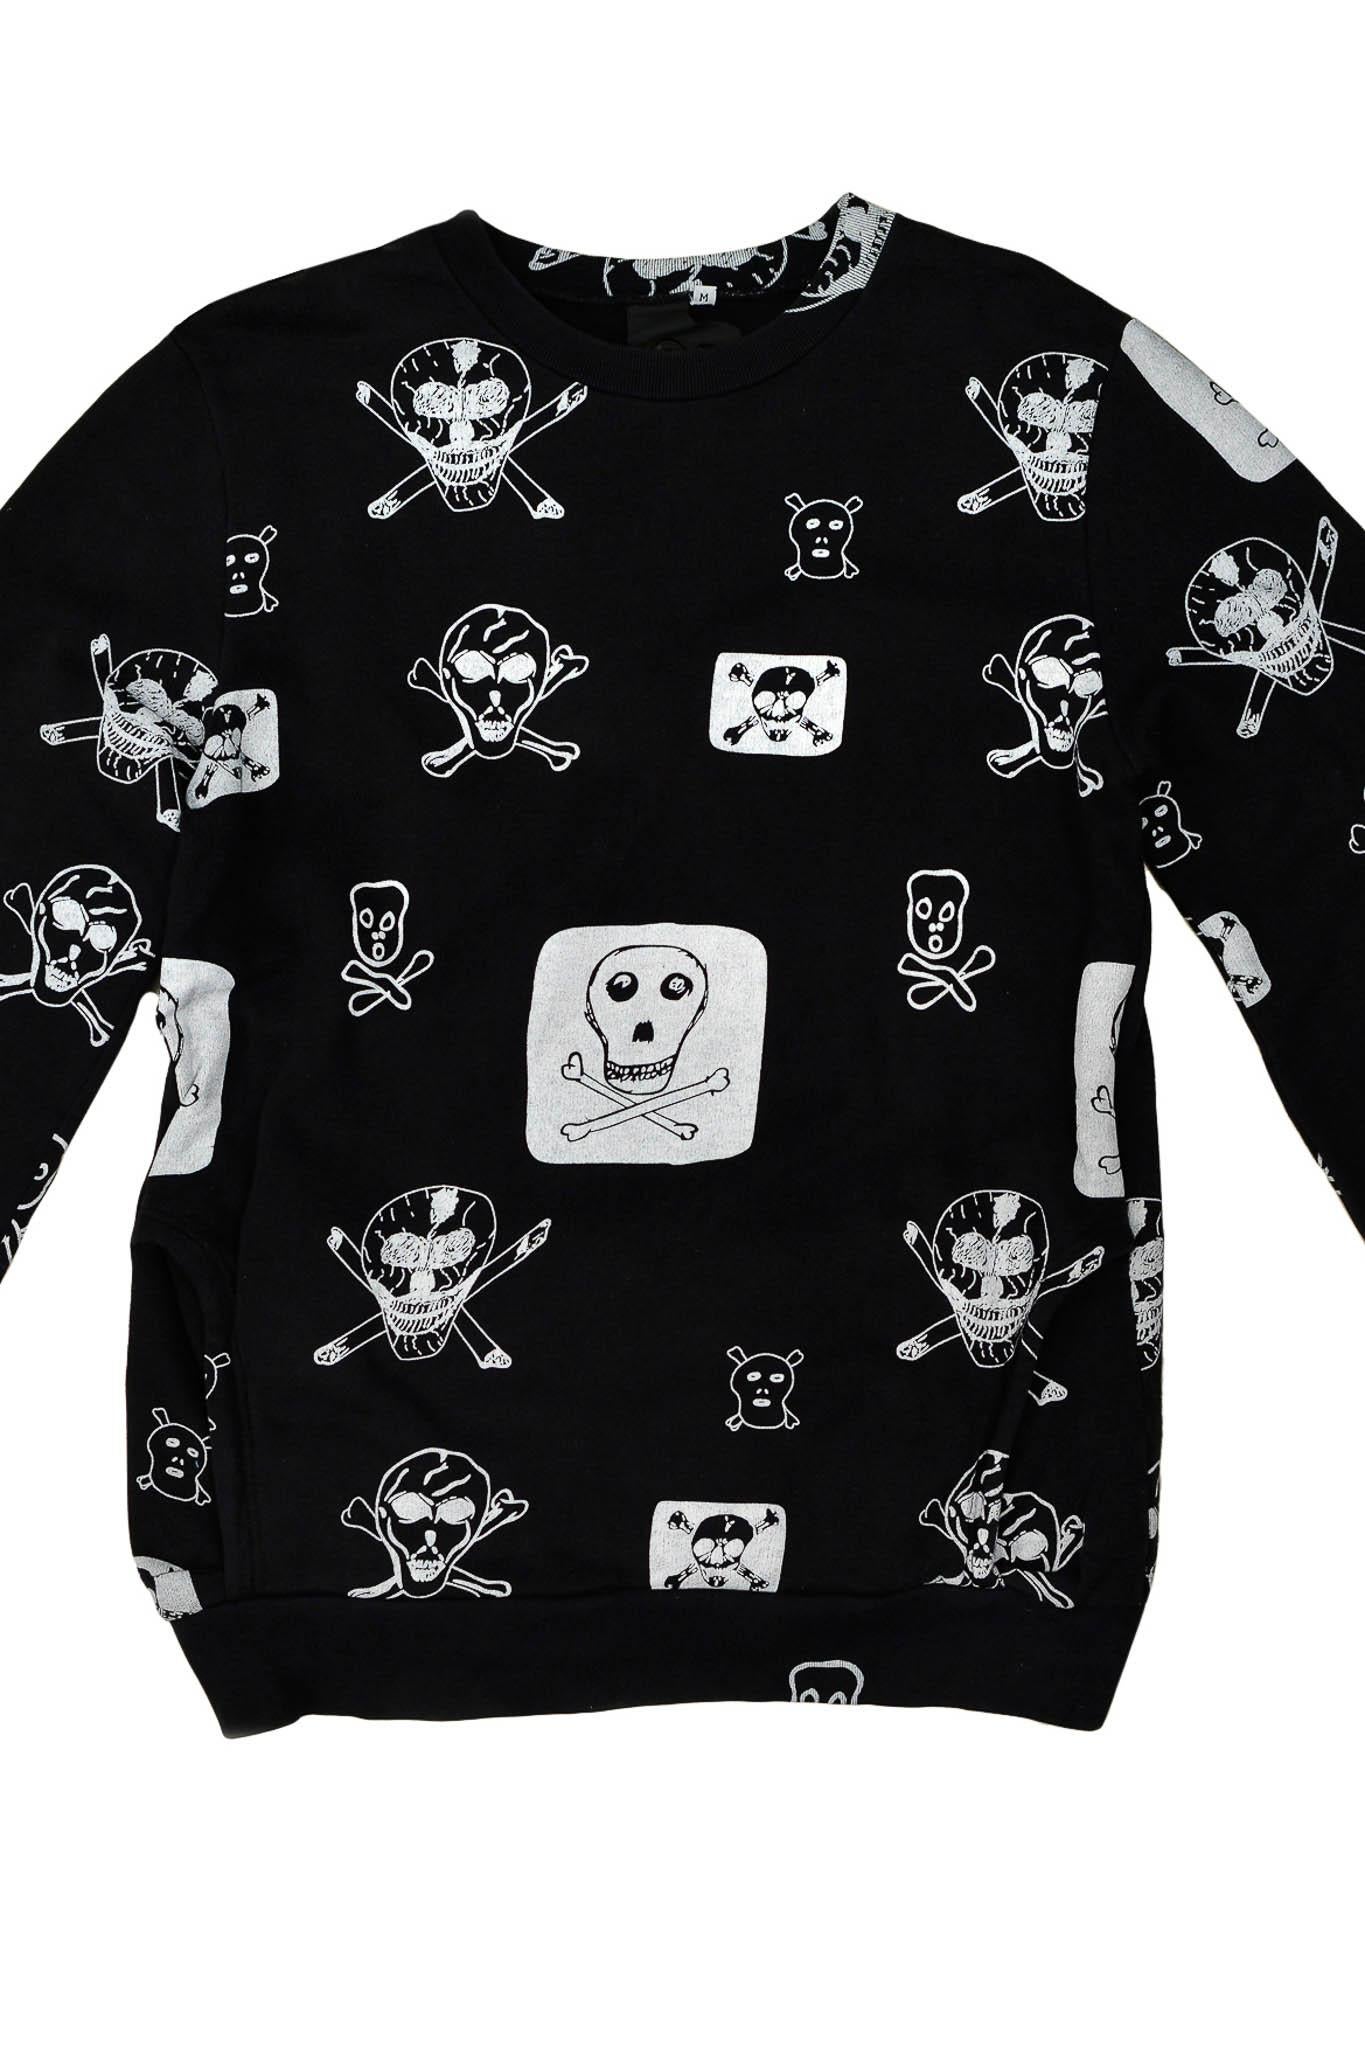 Men's Bernhard Willhelm Black Skull & Crossbones Sweatshirt 2003 For Sale